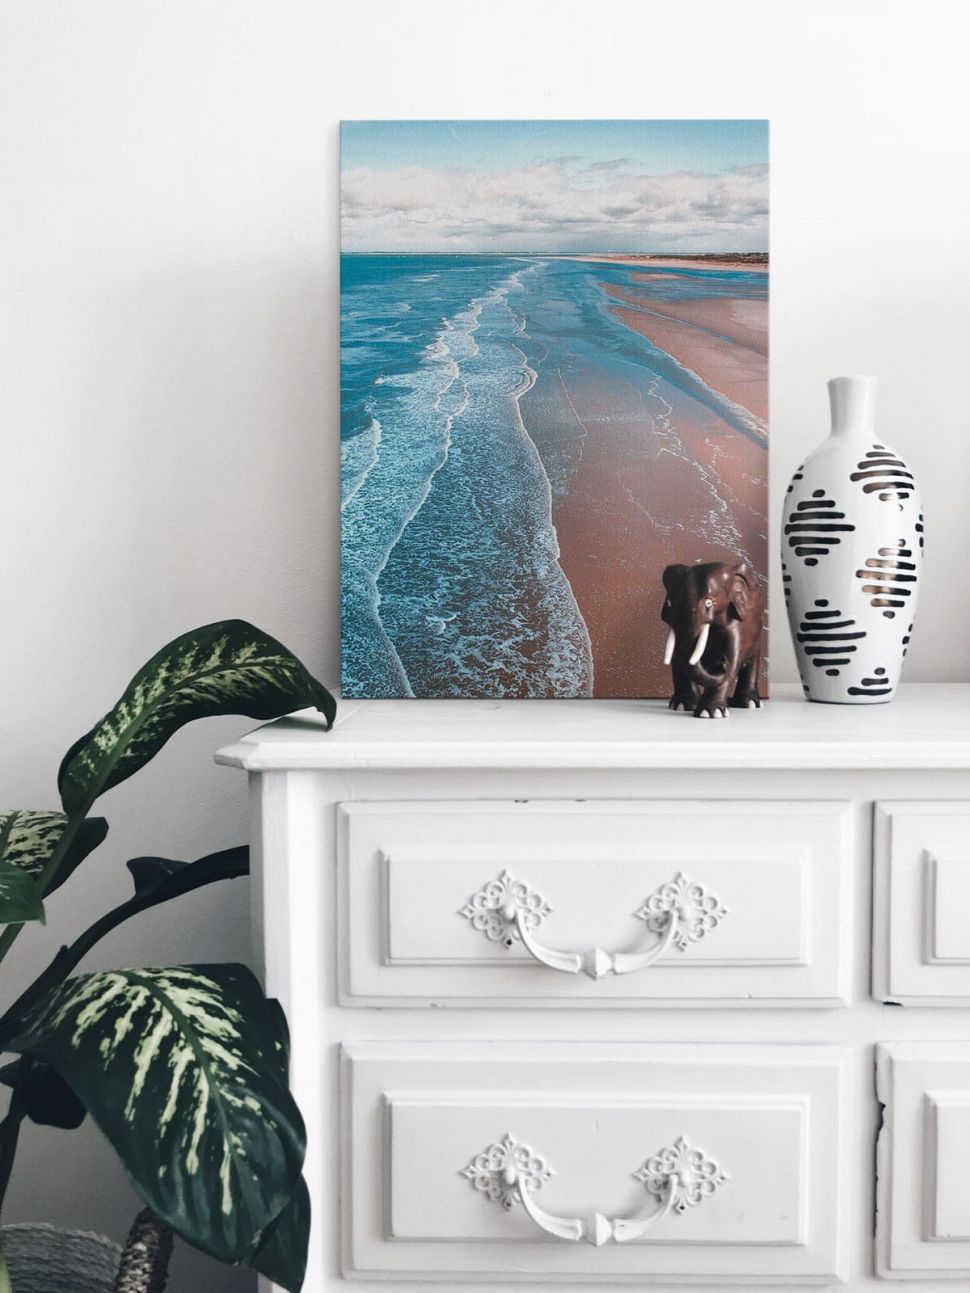 Obraz na płótnie zatytułowany Seashore postawiony na białej komodzie w pokoju